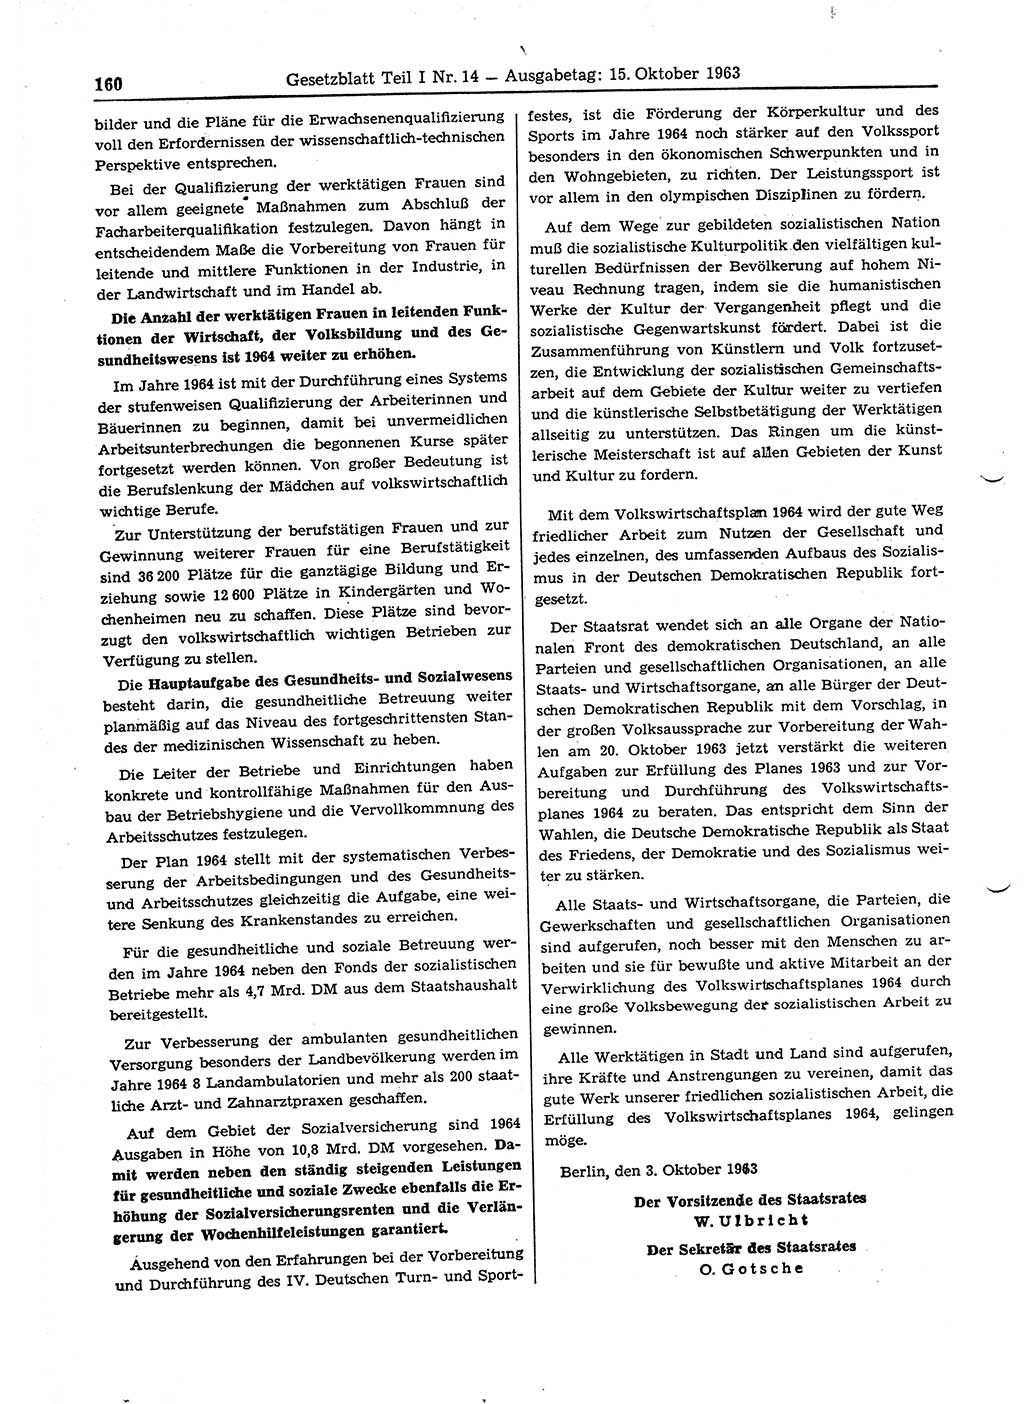 Gesetzblatt (GBl.) der Deutschen Demokratischen Republik (DDR) Teil Ⅰ 1963, Seite 160 (GBl. DDR Ⅰ 1963, S. 160)